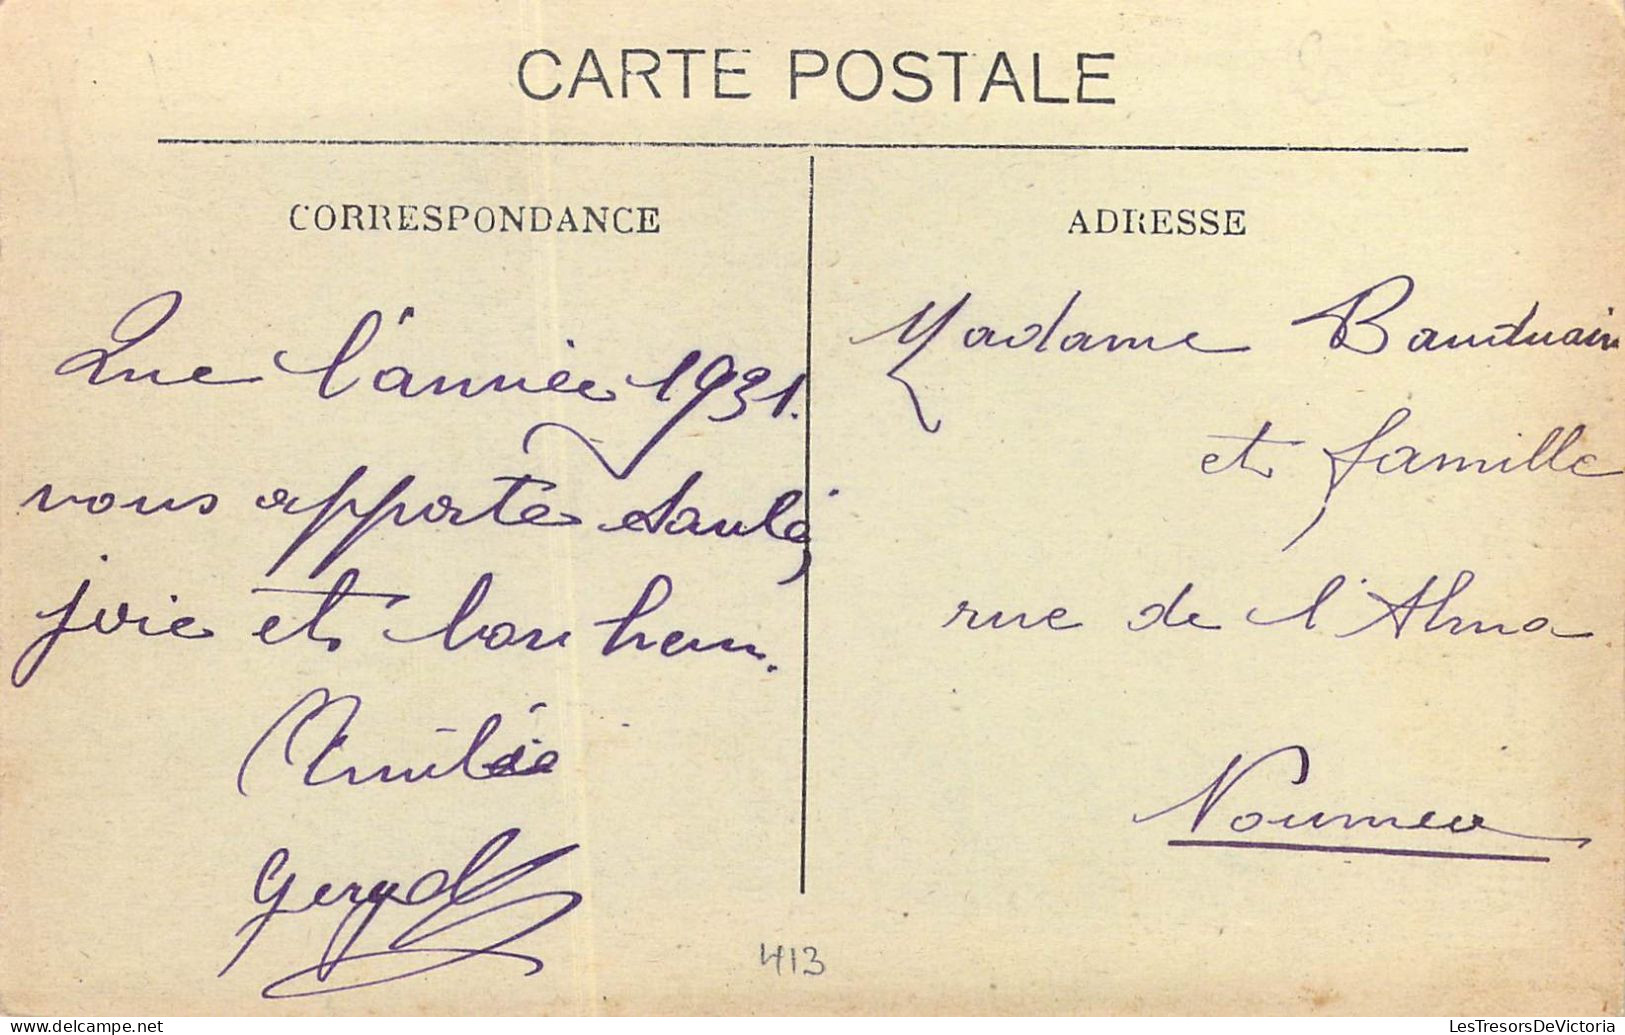 FRANCE - Nouvelle Calédonie - Nouméa - Rue Sébastopol - Carte Postale Ancienne - Nouvelle Calédonie